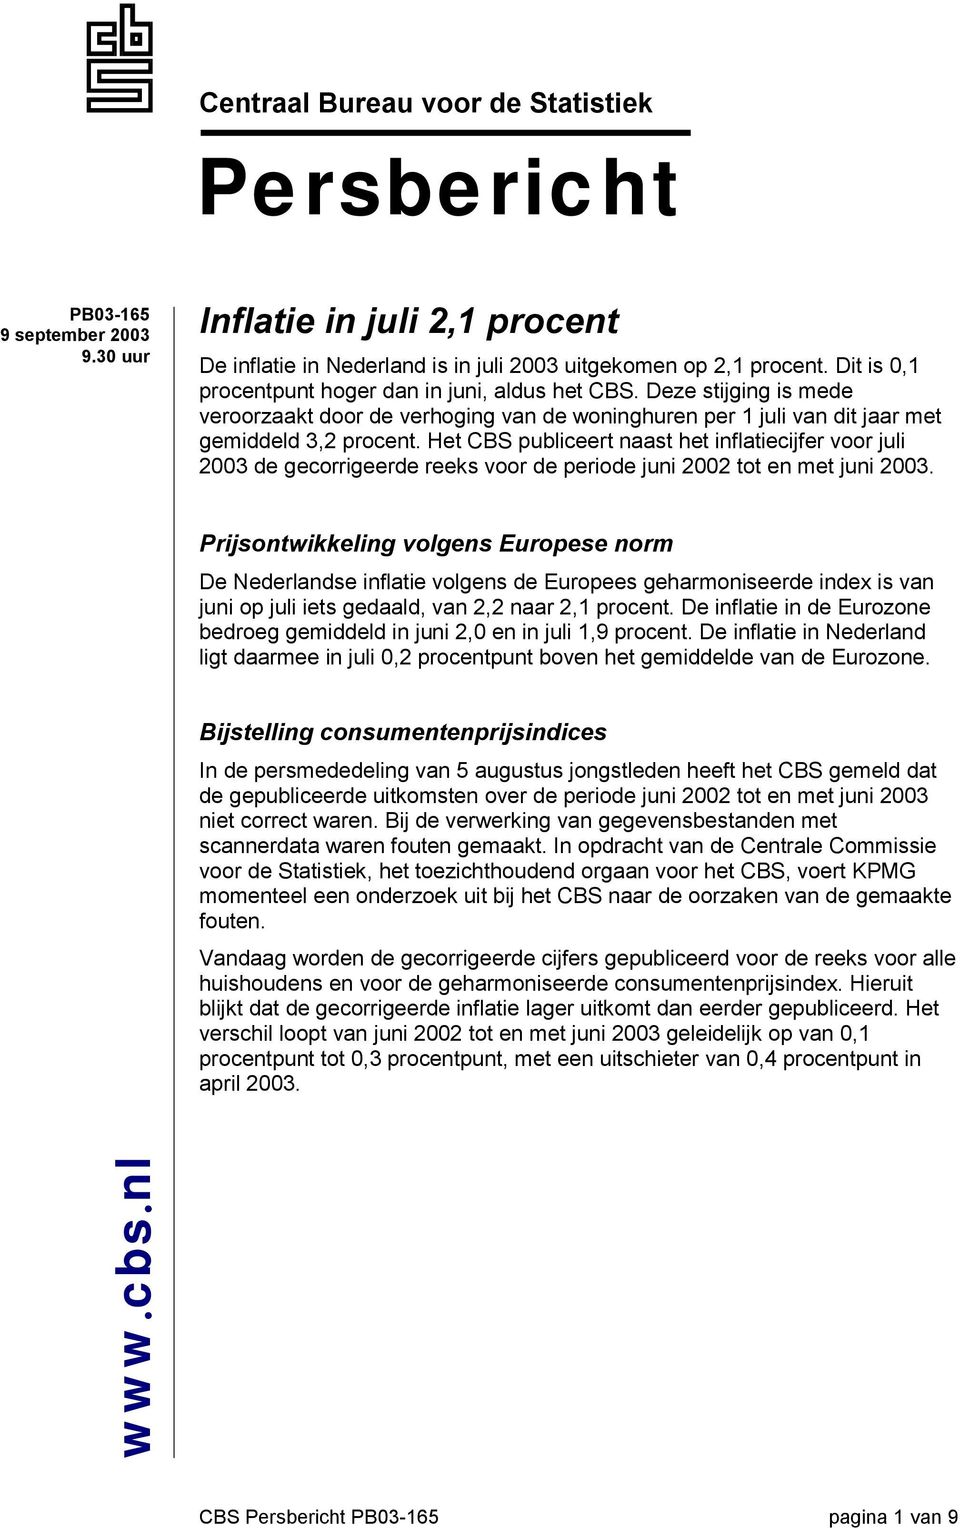 Het CBS publiceert naast het inflatiecijfer voor juli 2003 de gecorrigeerde reeks voor de periode juni 2002 tot en met juni 2003.